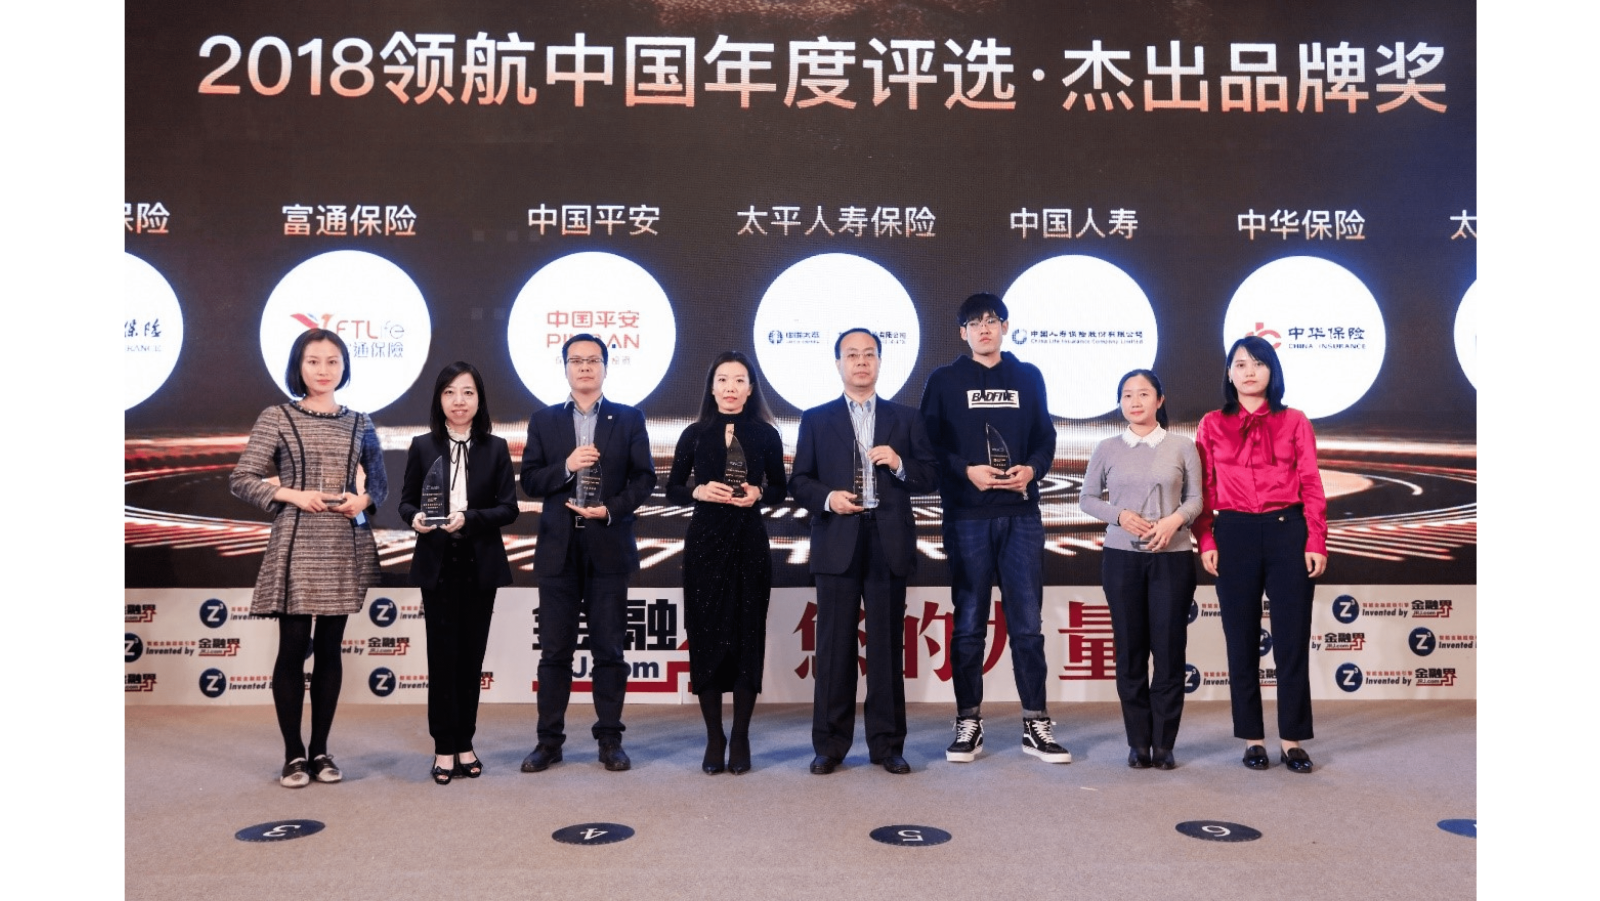 富通保險榮獲2018領航中國年度評選”傑出香港保險品牌“大獎